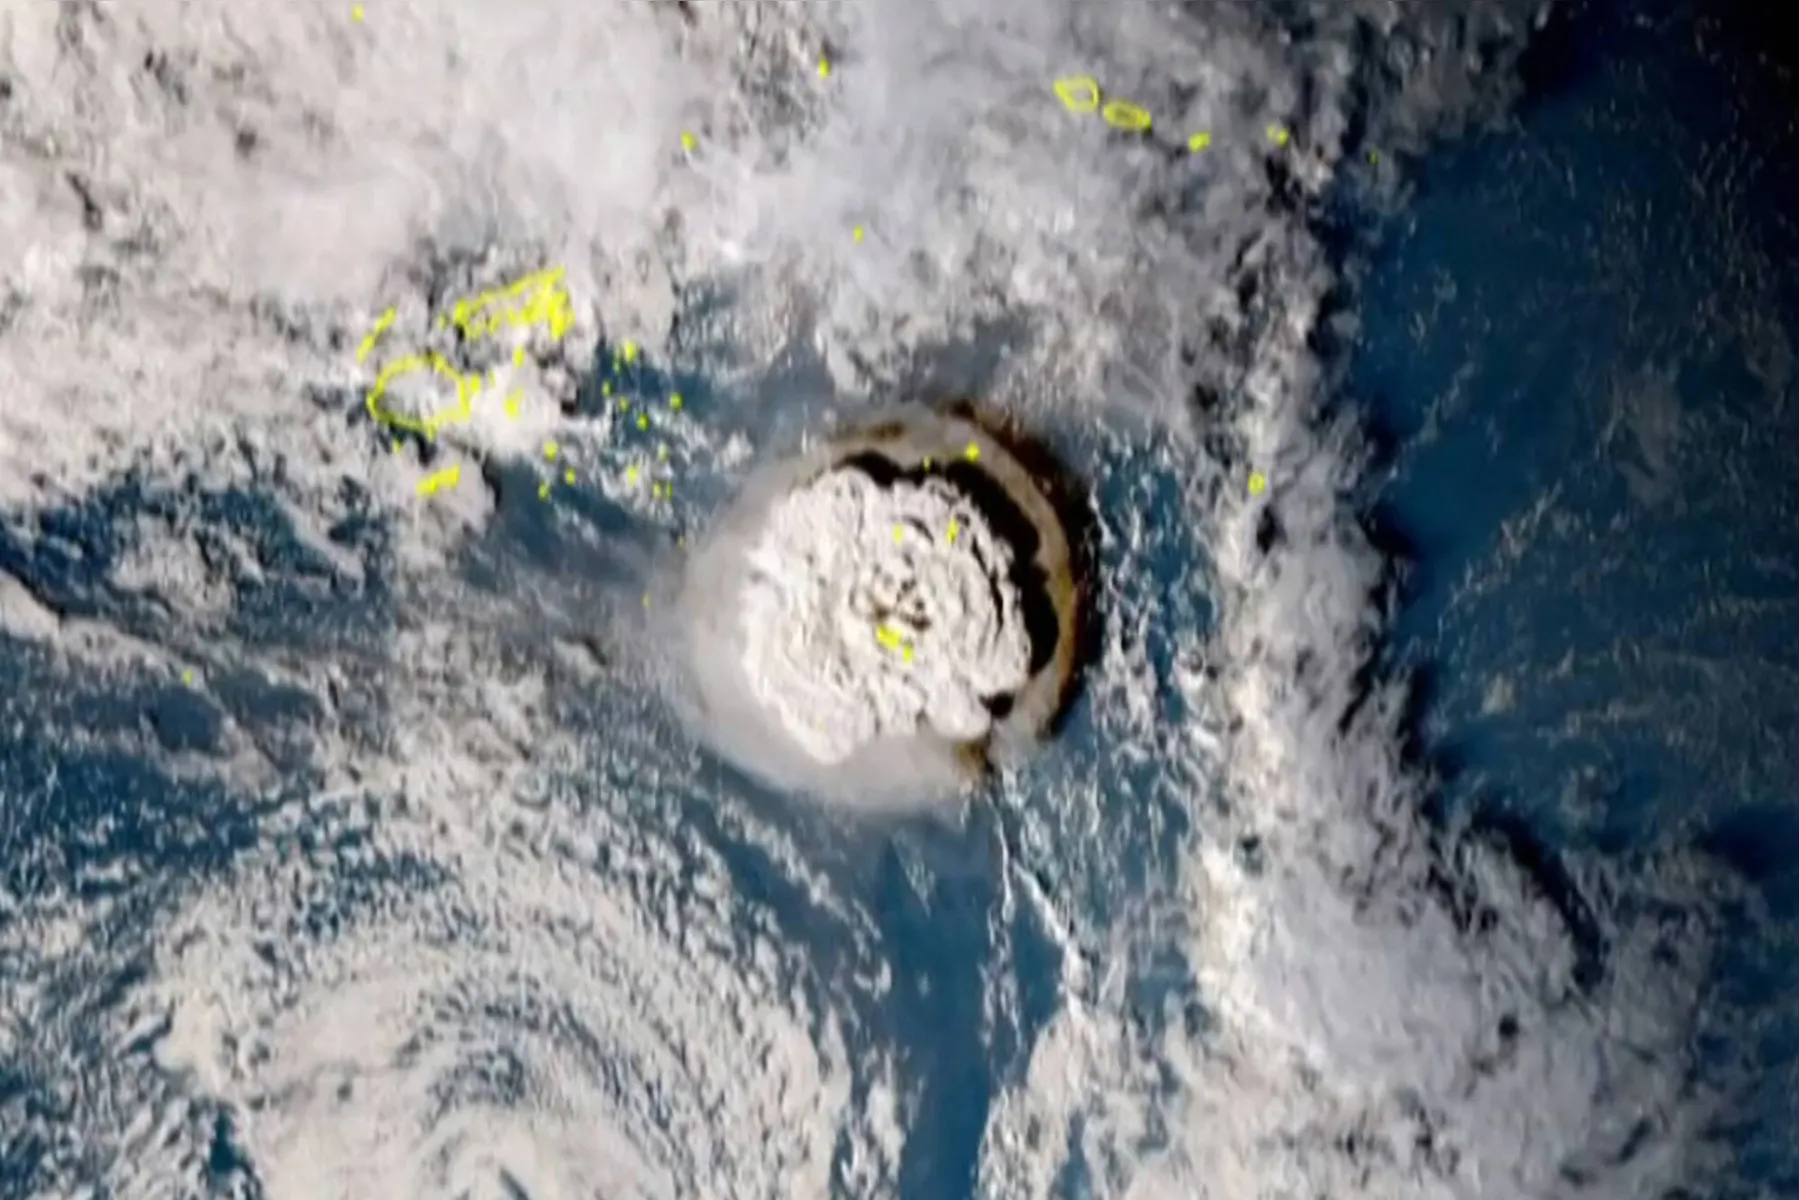 Imagens feitas pelo satélite Himawari-8 do Japão e divulgadas pelo Instituto Nacional de Tecnologia da Informação e Comunicações (Japão) em 15 de janeiro de 2022 mostra a erupção vulcânica que provocou um tsunami em Tonga. A erupção foi tão intensa que foi ouvida como "sons altos de trovão" em Fiji, a mais de 800 quilômetros (500 milhas) de distância.